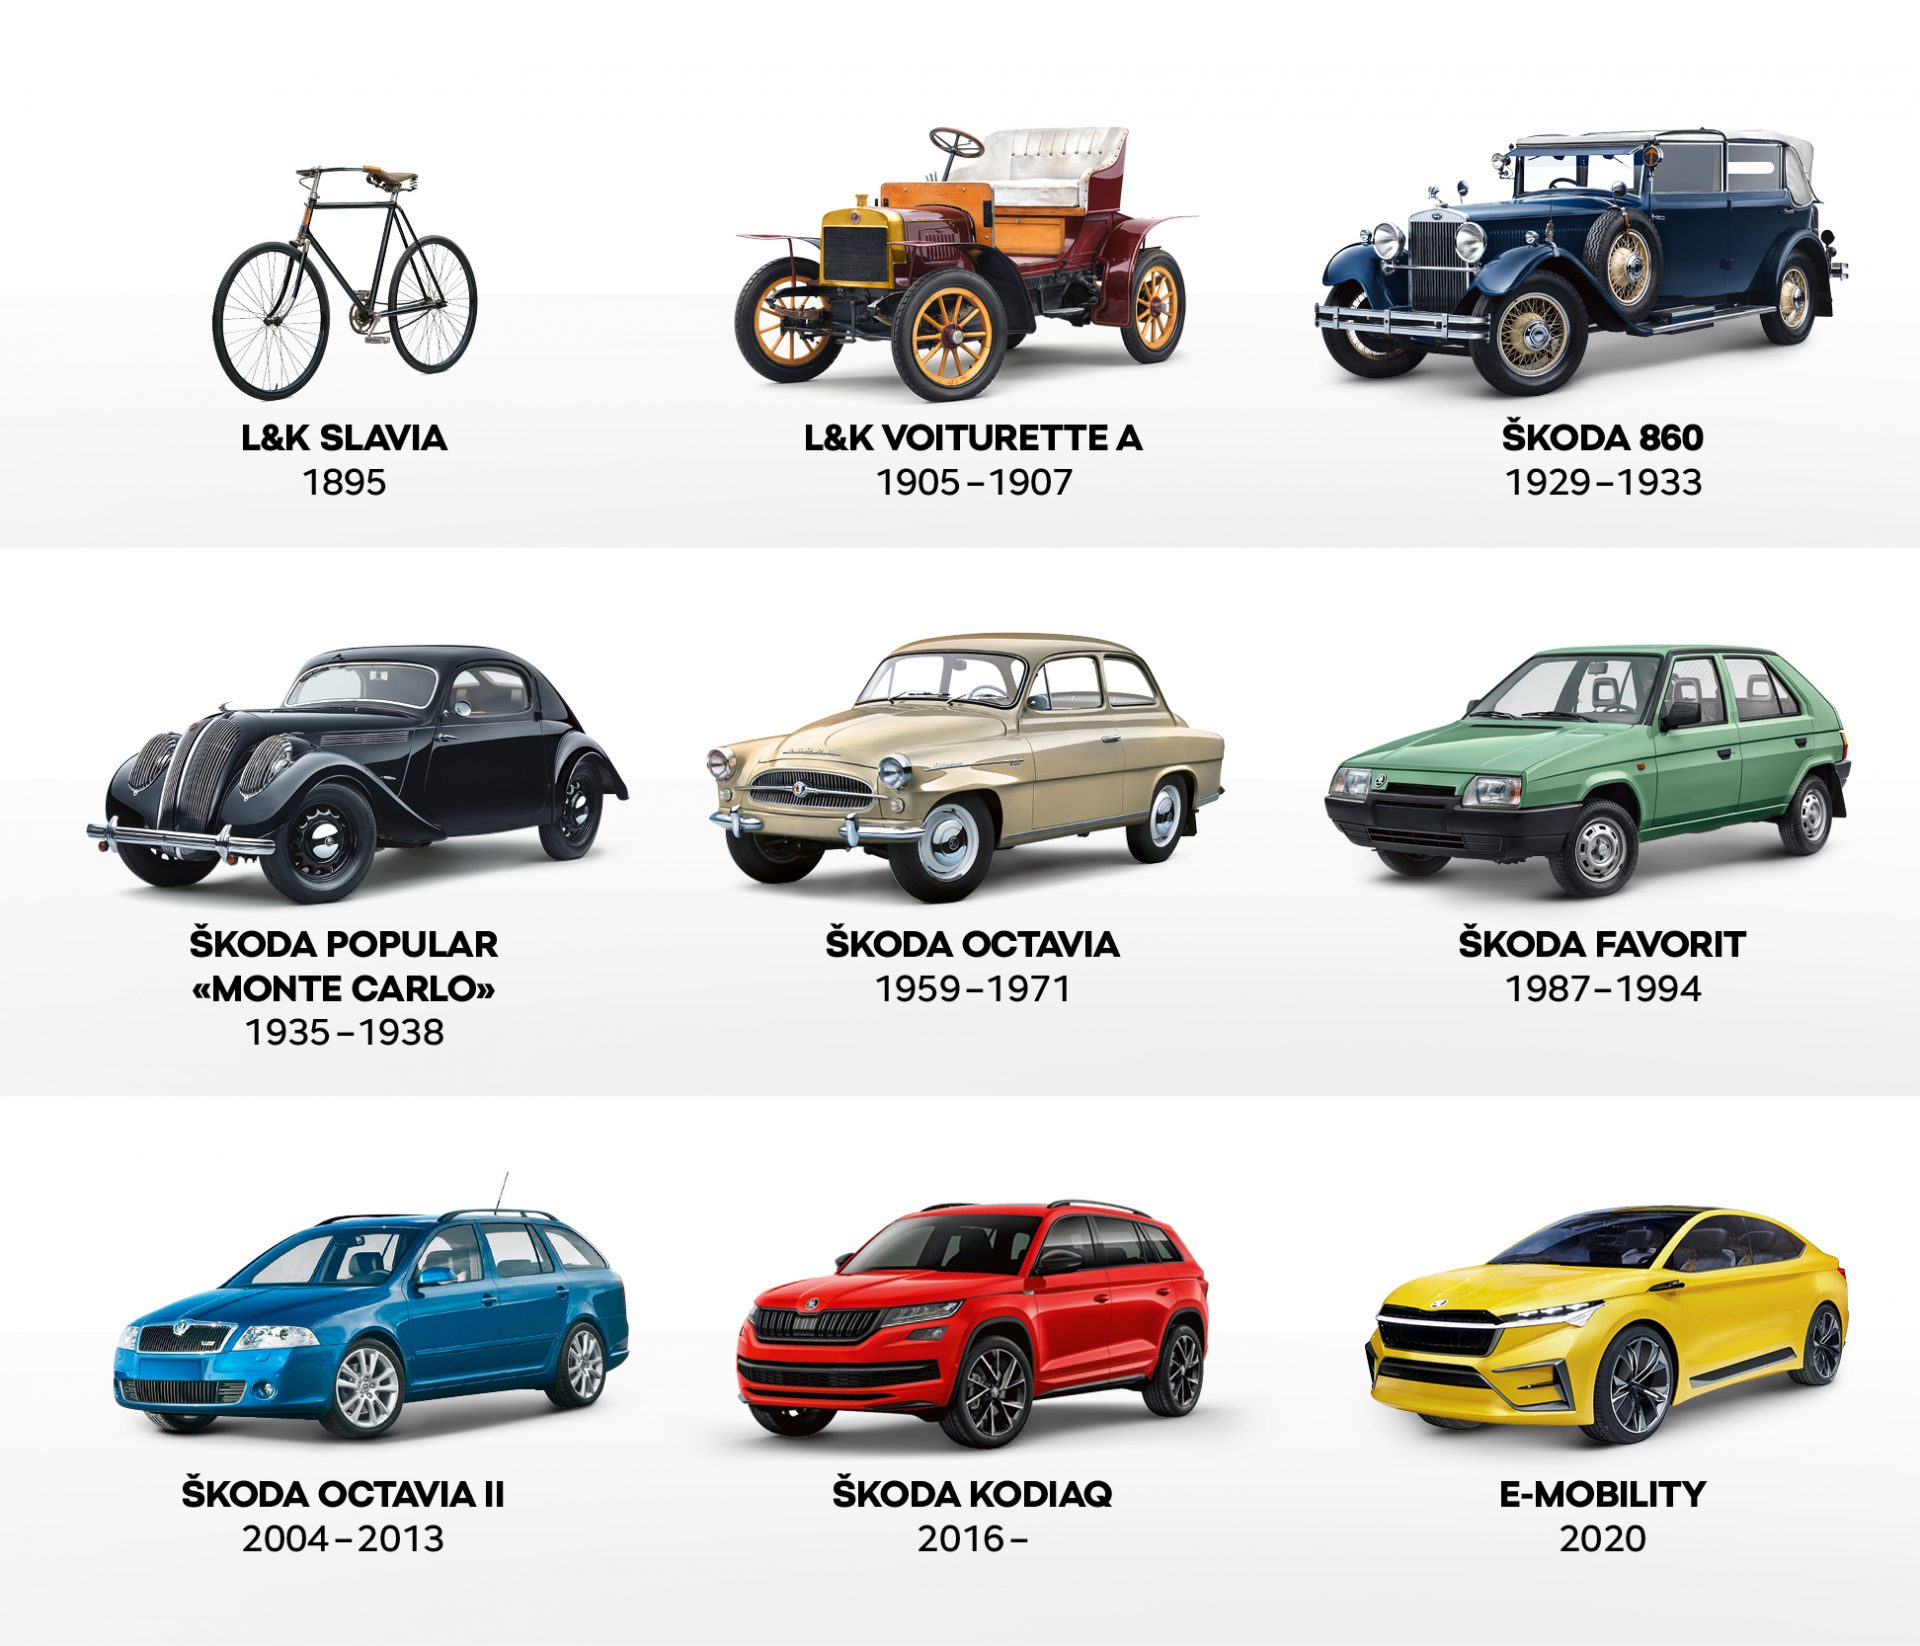 La storia dello sviluppo di ŠKODA raccontata attraverso i diversi modelli di veicoli.